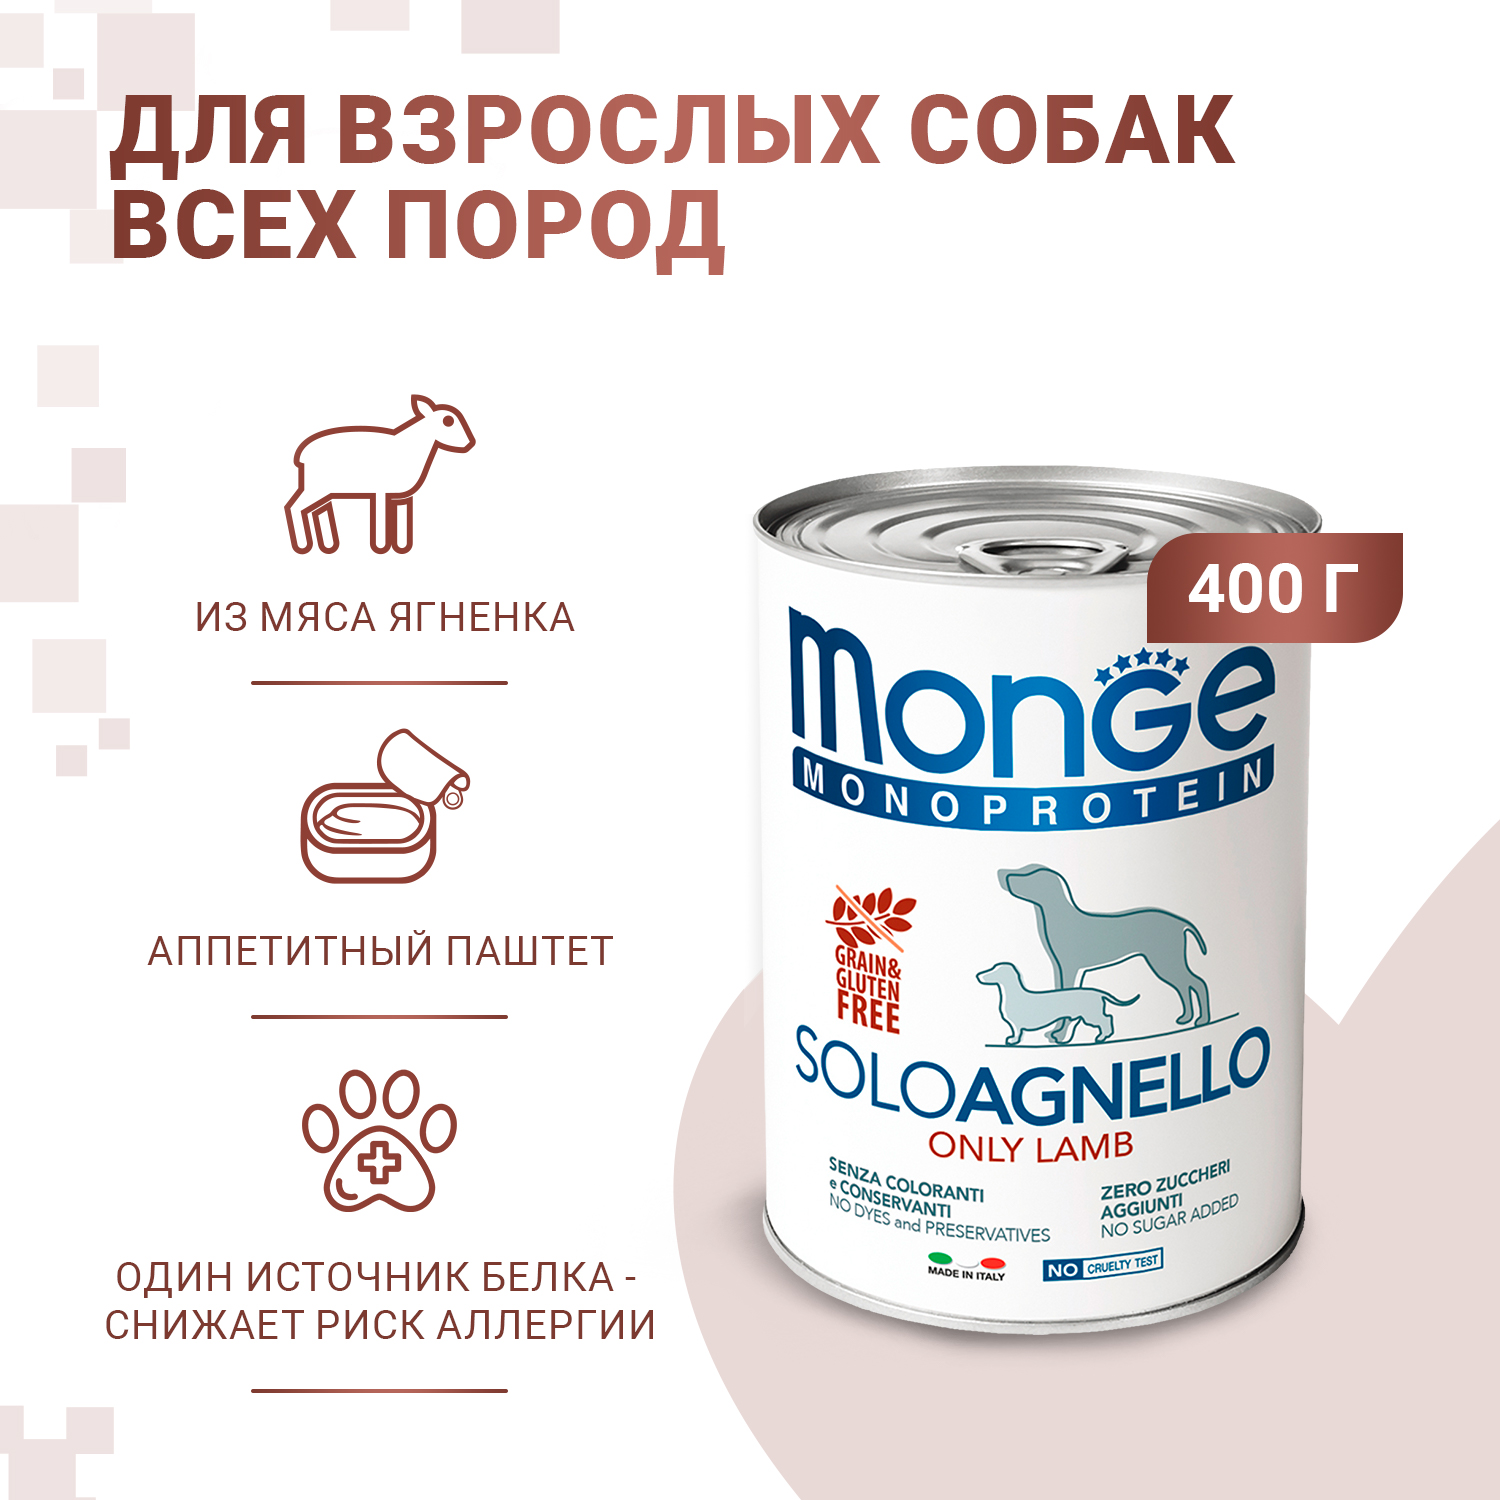 Влажный корм Monge Dog Monoprotein для собак, паштет из ягненка, консервы 400 г